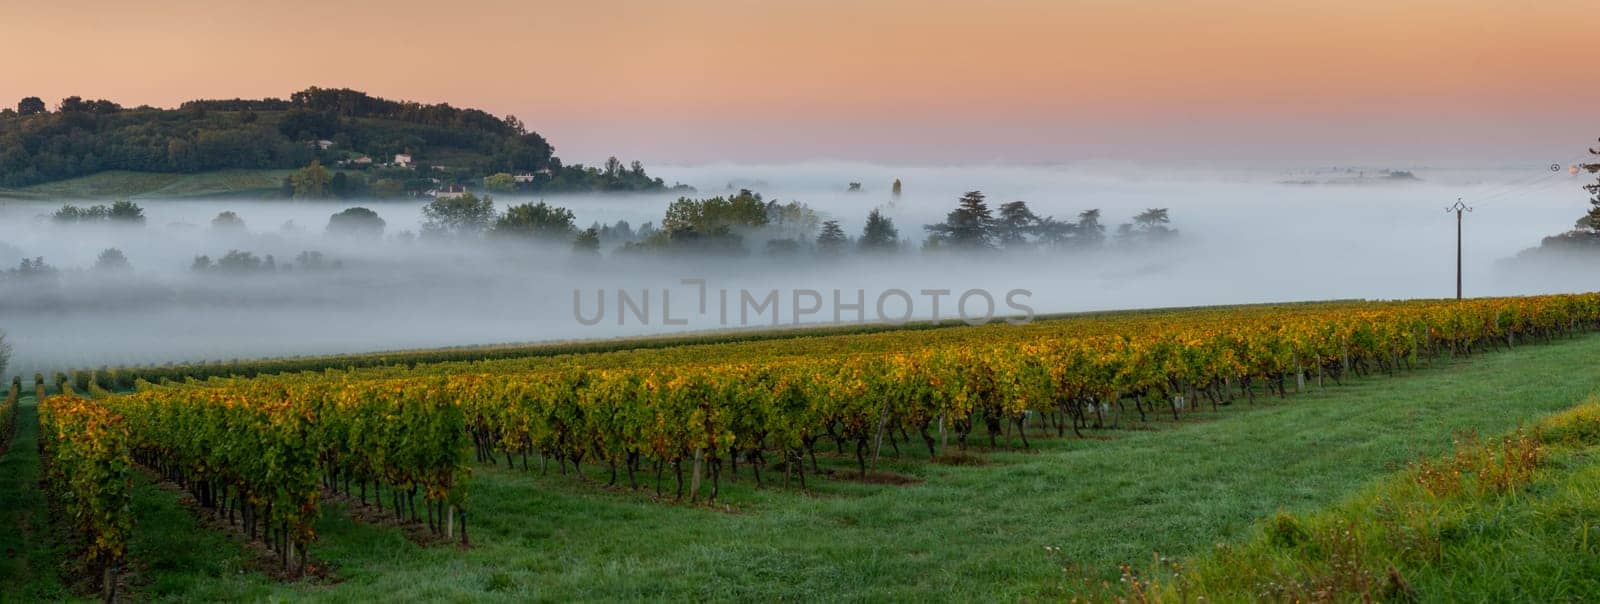 Sunset landscape and smog in bordeaux wineyard, Loupiac, France, Europe by FreeProd